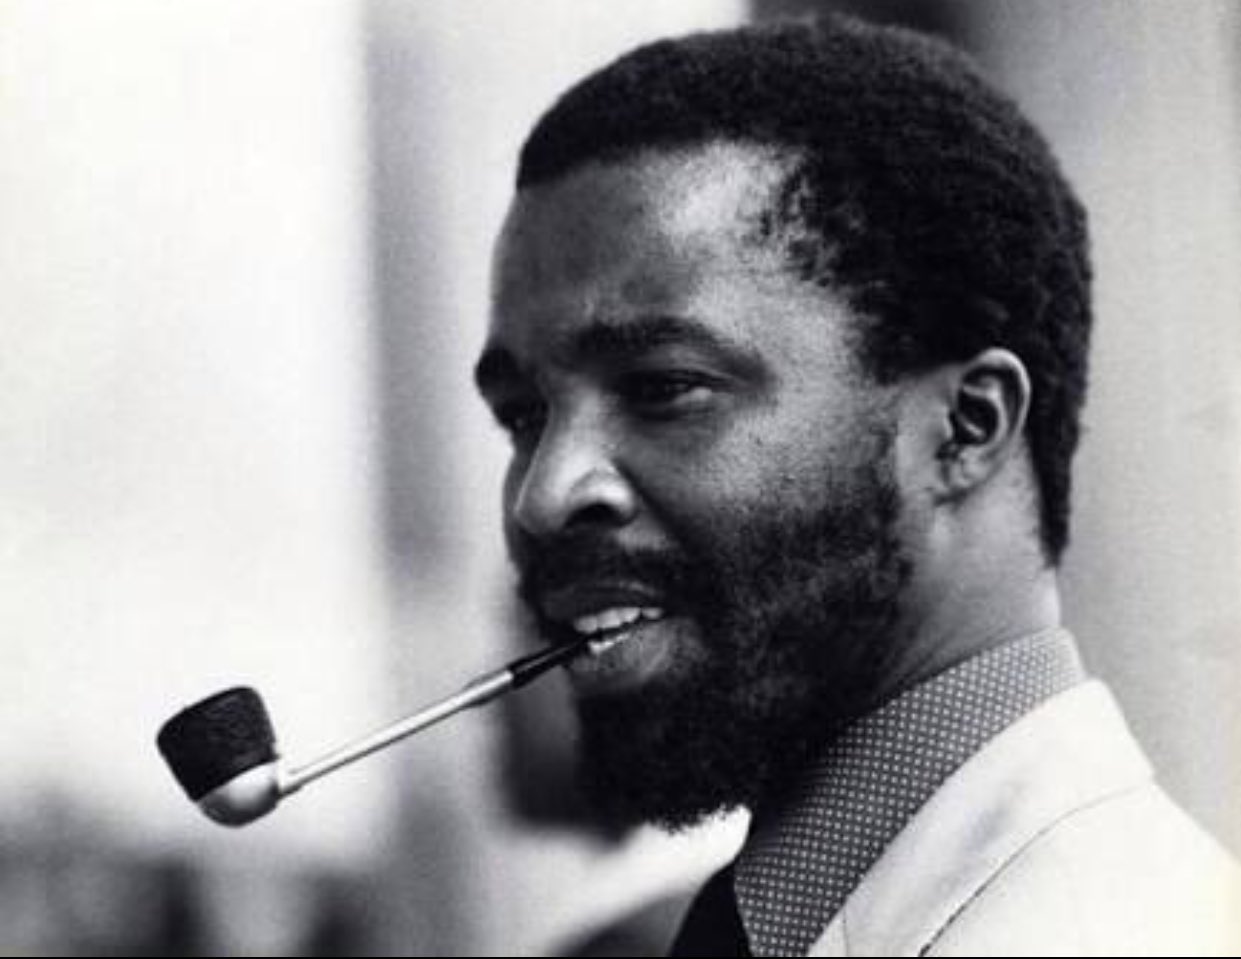 Happy Birthday President Thabo Mbeki 